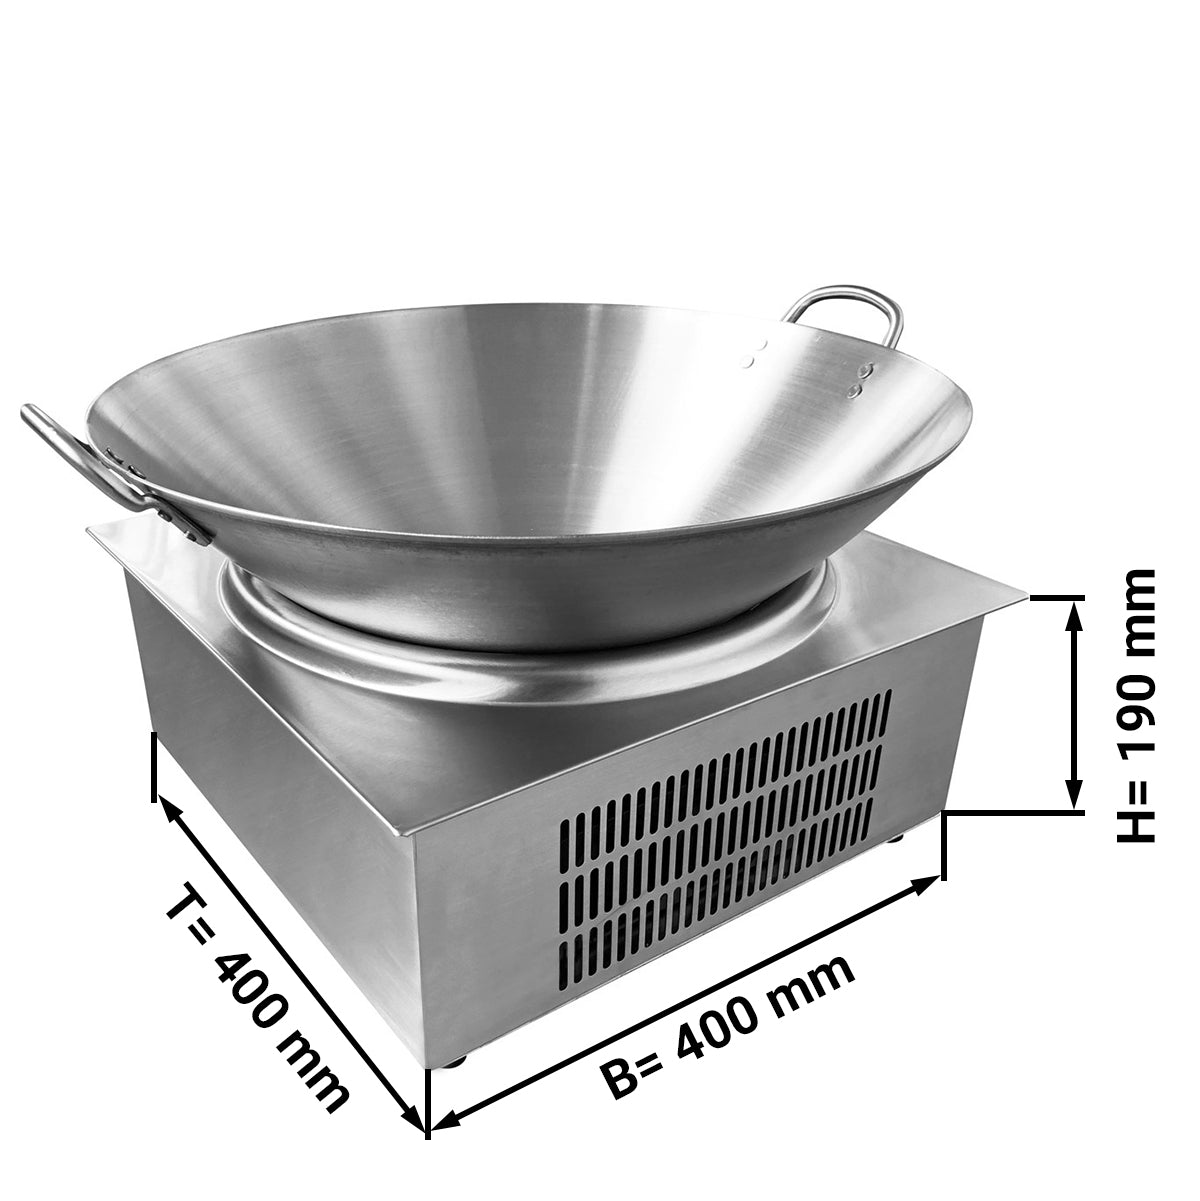 Уок-Индукционна готварска печка (3,5 kW) - вкл.Уок